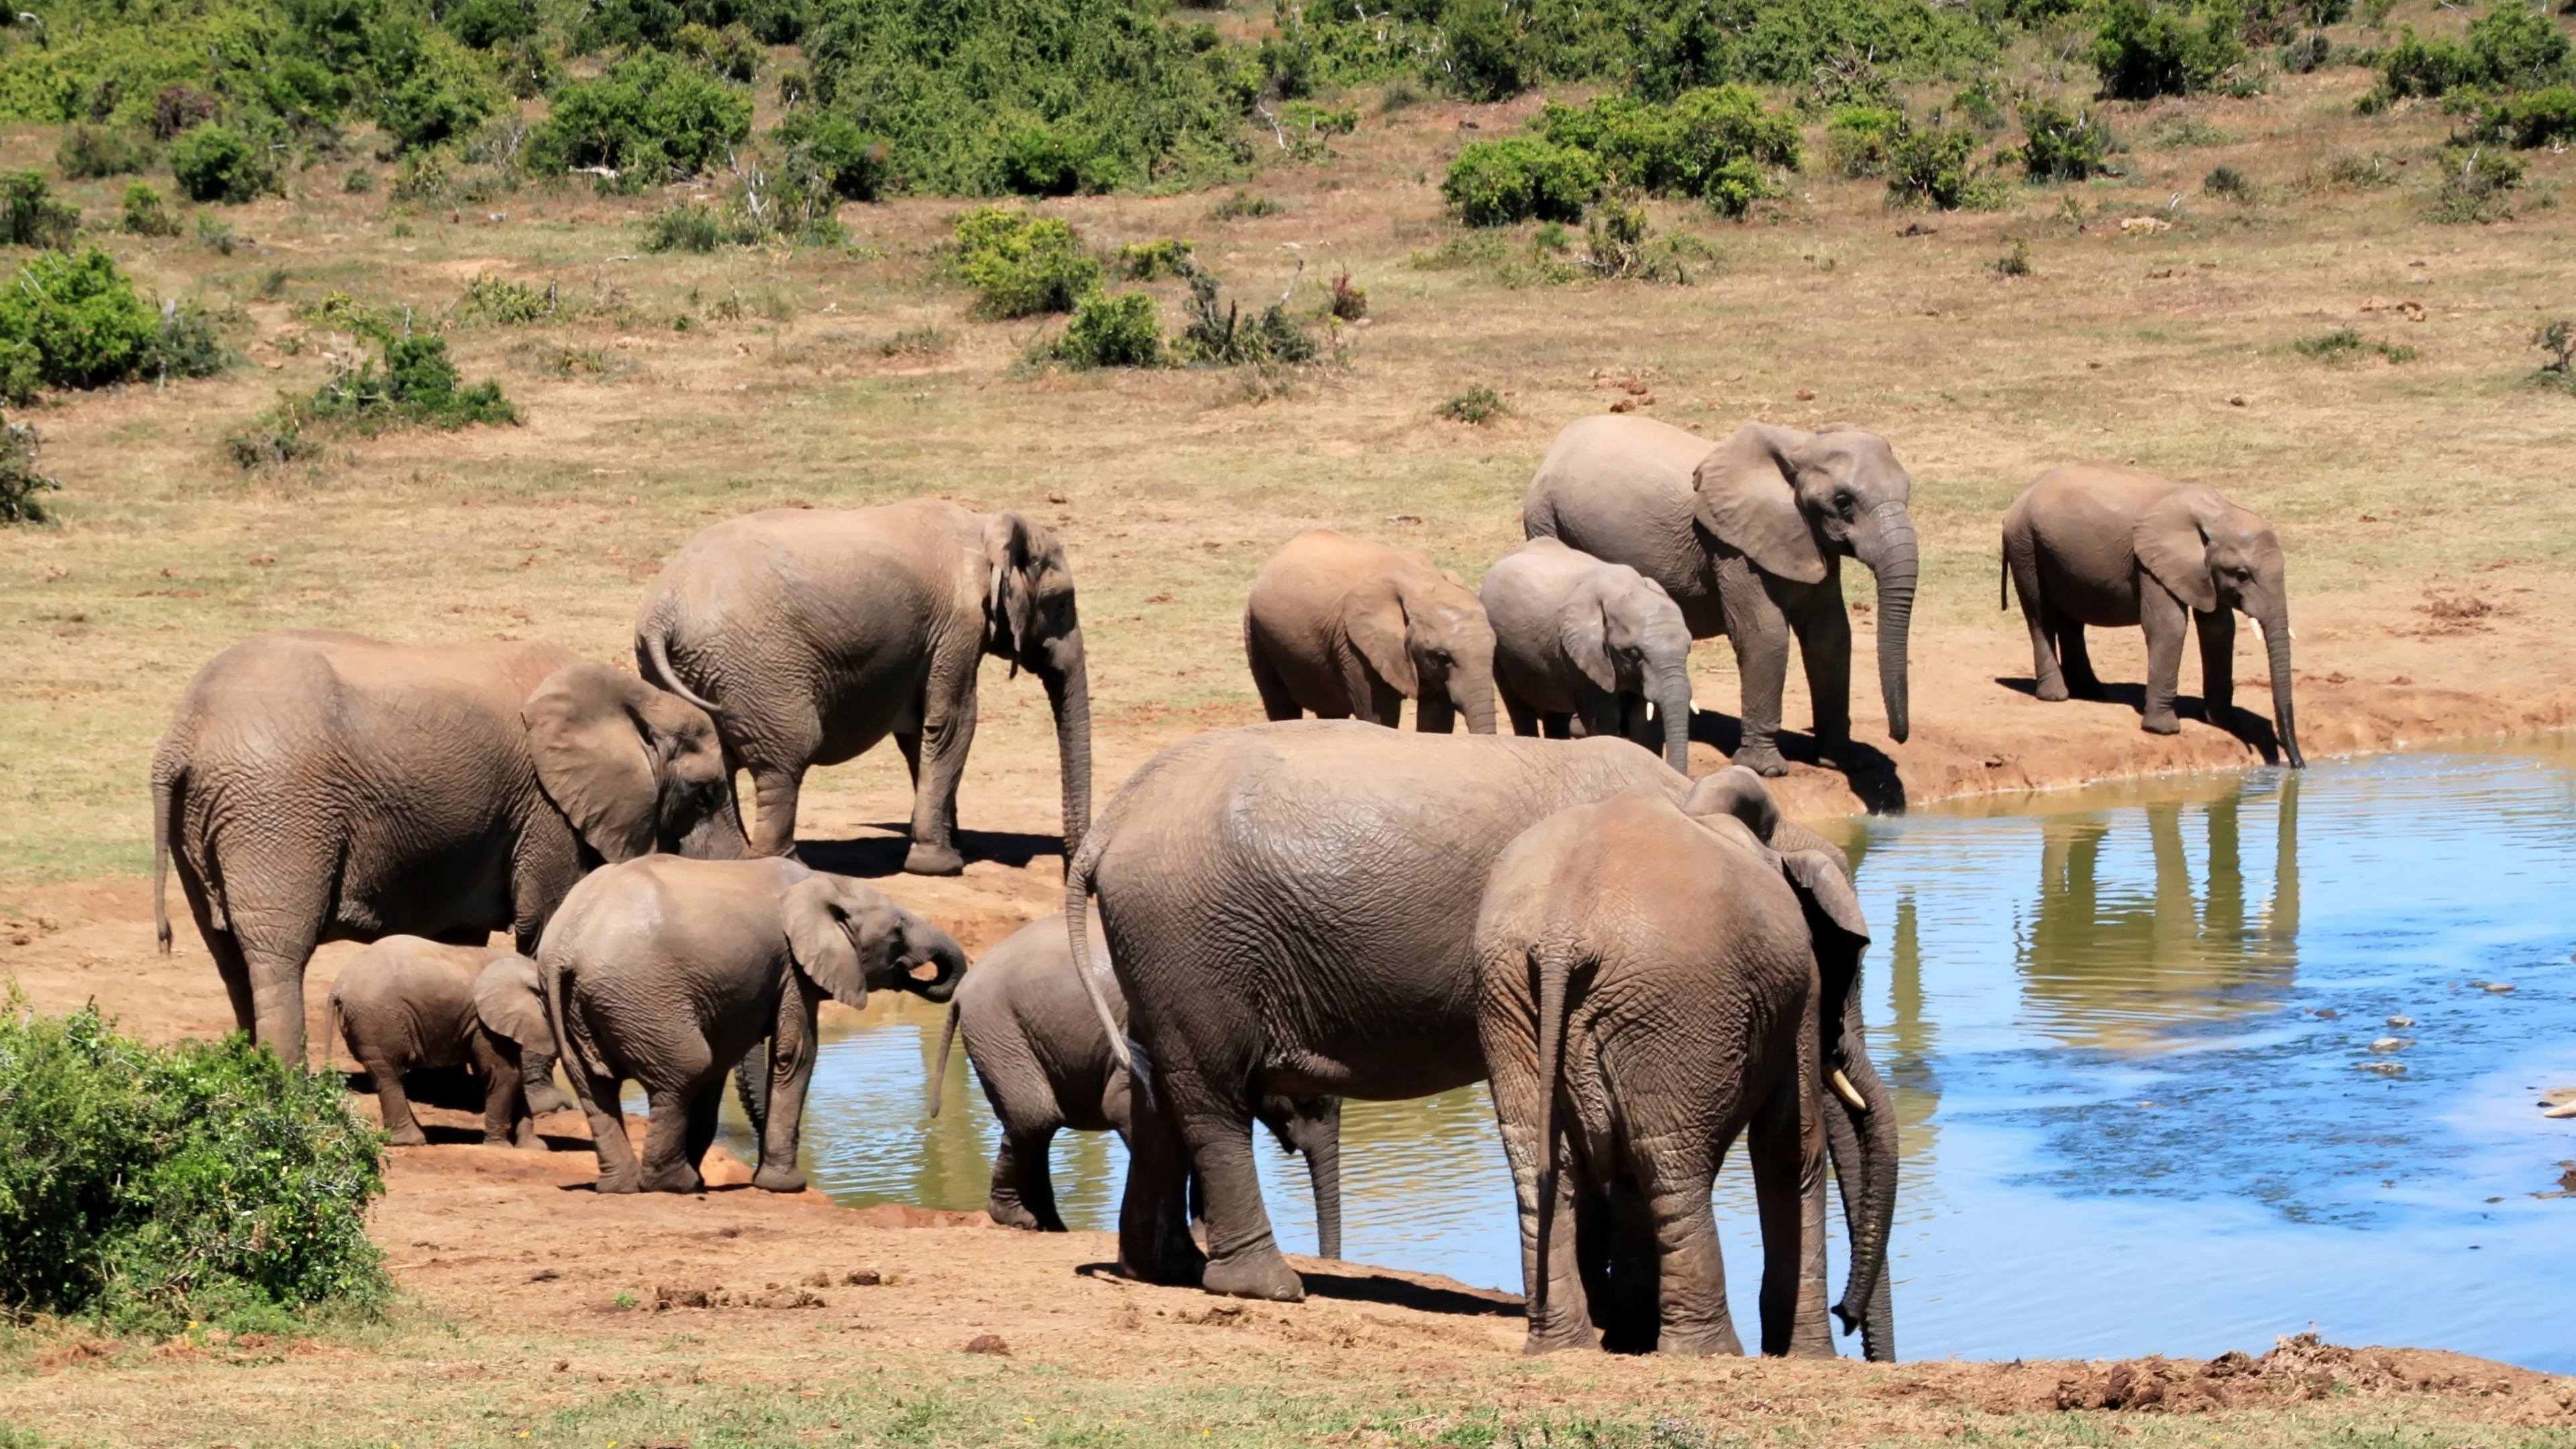 陆地动物, 野生动物, 大象和猛犸象, 牛群, 非洲象 壁纸 3840x2160 允许